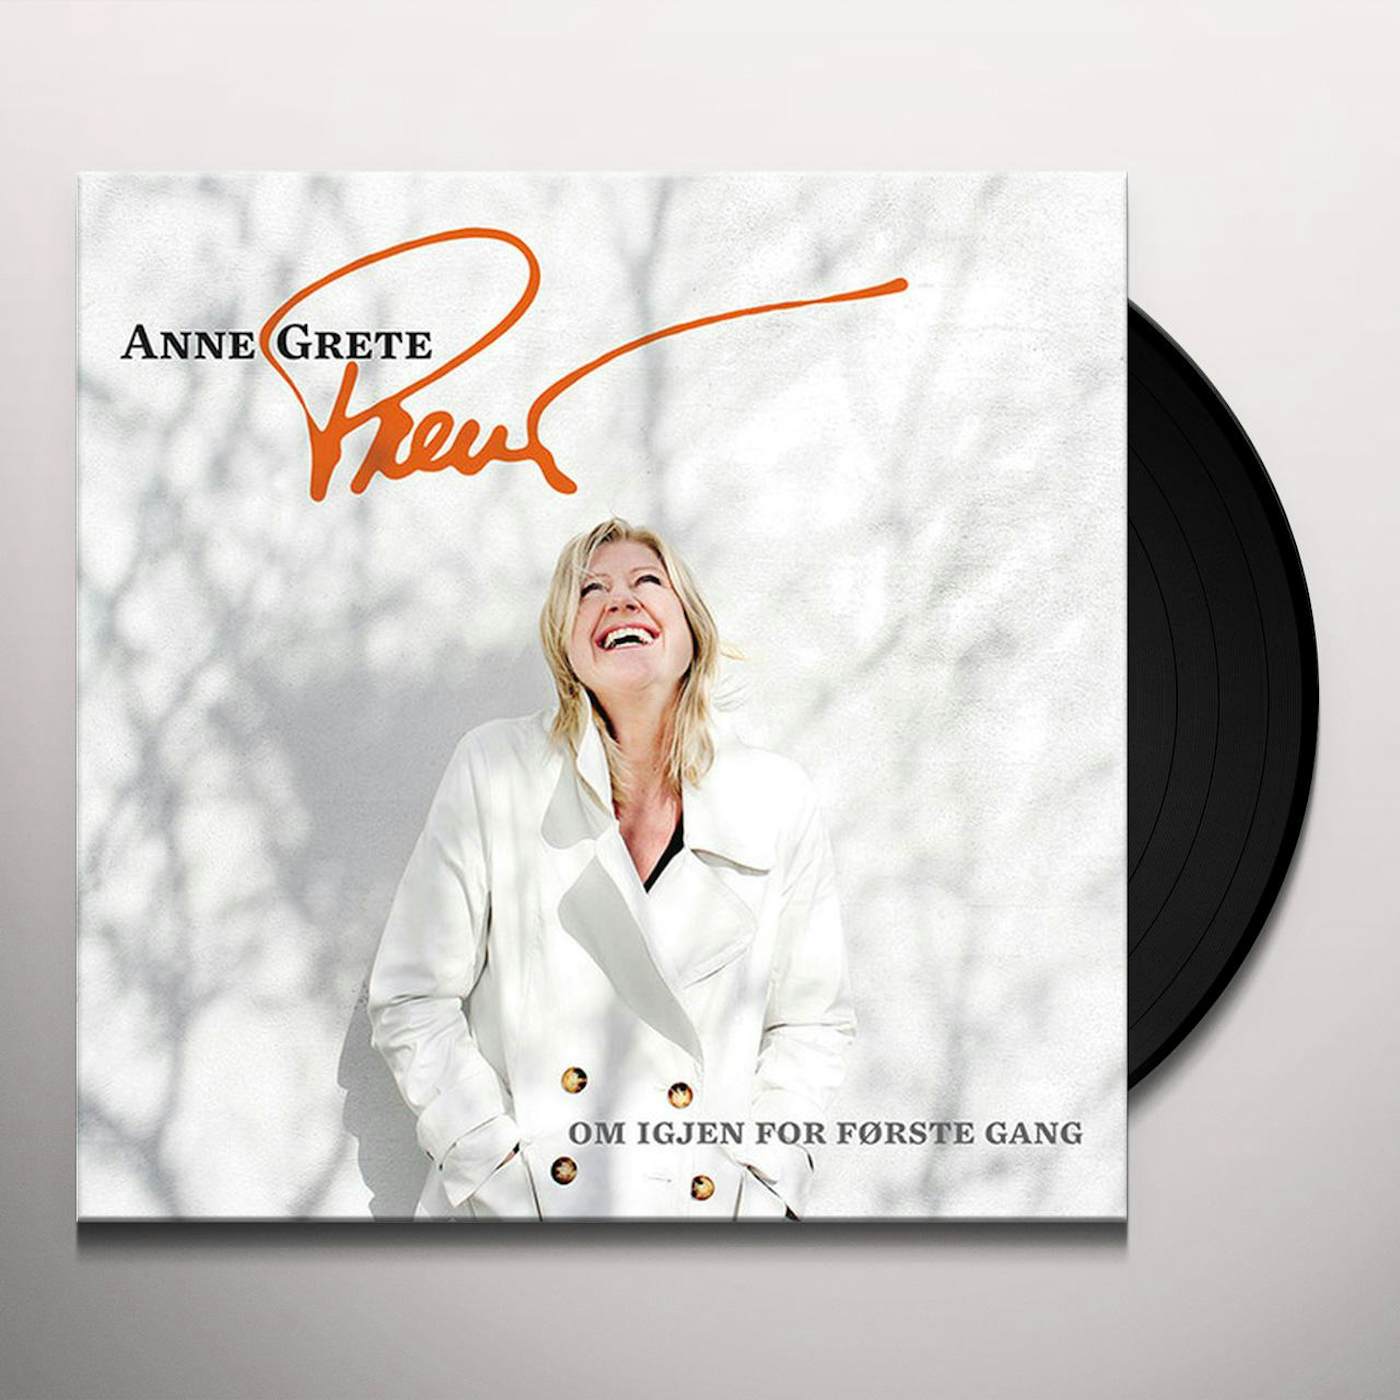 Anne Grete Preus OM IGJEN FOR FORSTE GANG Vinyl Record